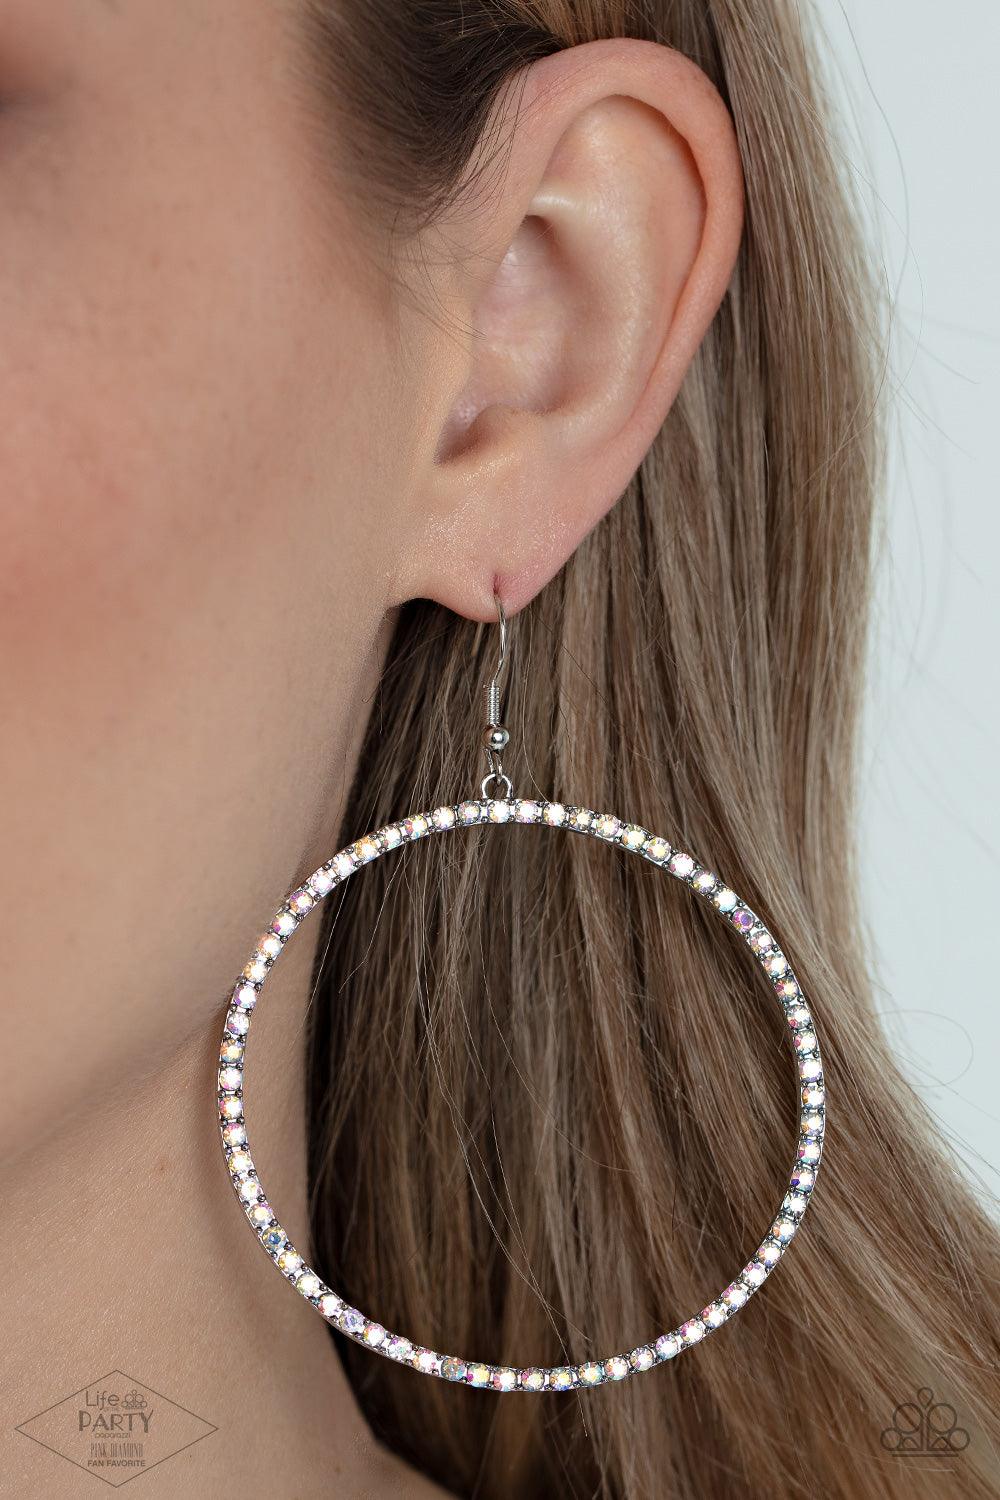 Wide Curves Ahead Multi Earrings - Jewelry by Bretta